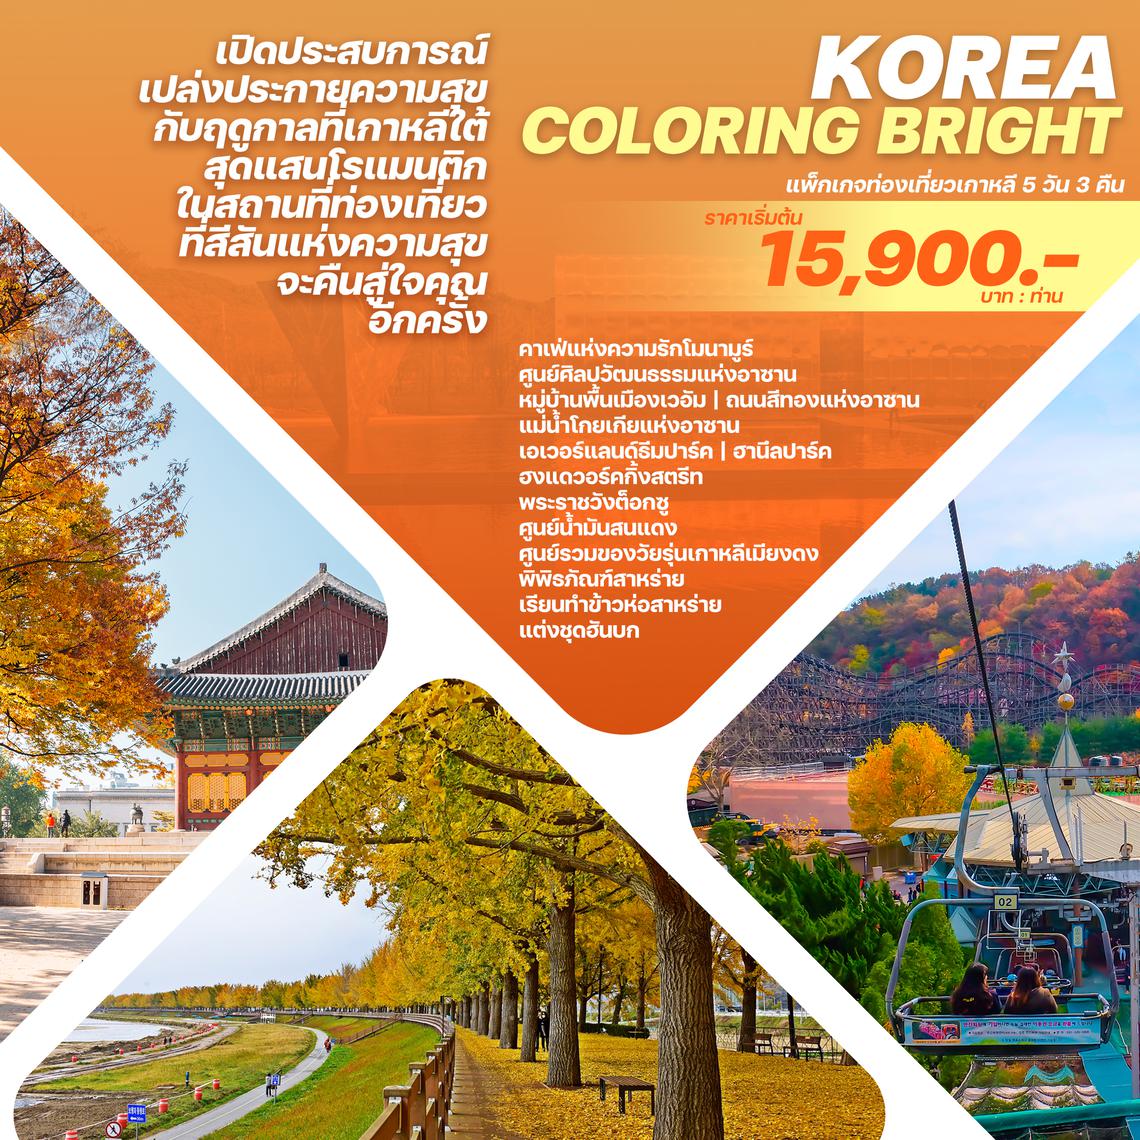 ทัวร์เกาหลี KOREA COLORING BRIGHT 5D3N - ใบไม้เปลี่ยนสี